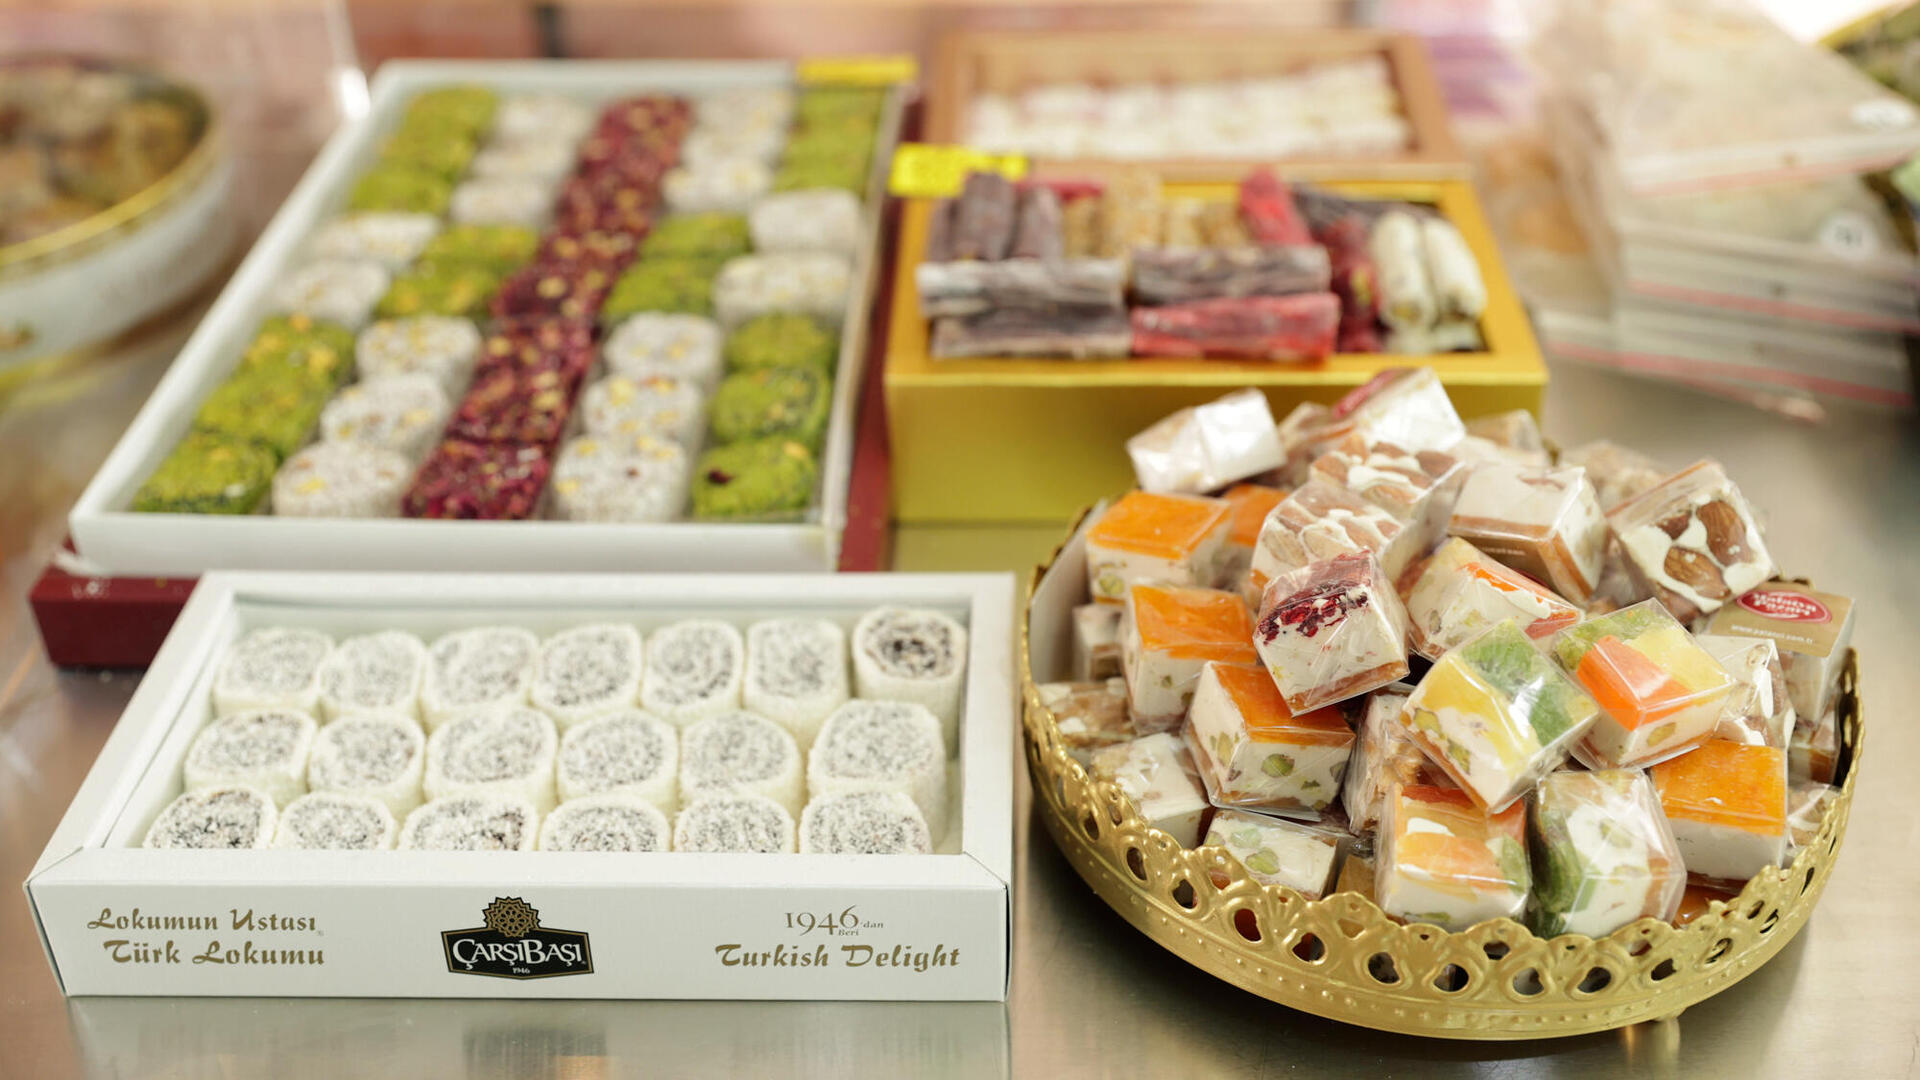 פנאי סולטאנה - חנות ממתקים טורקיים ובית קפה טורקי בשוק לוינסקי.